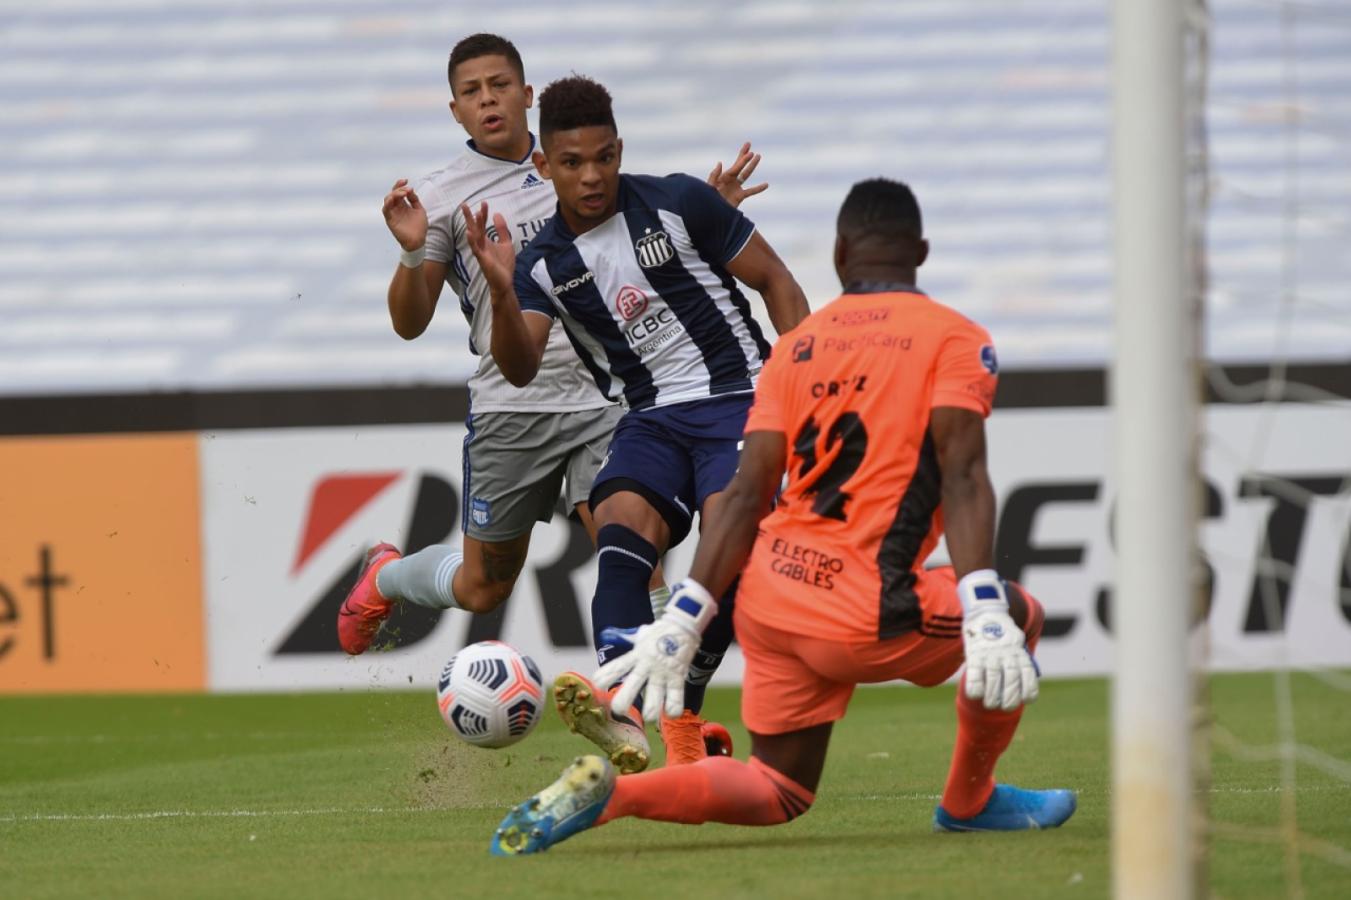 Imagen Valoyes estuvo a punto de abrir la cuenta a los 7 minutos pero su disparo con pierna derecha salió desviado por poco. Foto: Staff Images / CONMEBOL